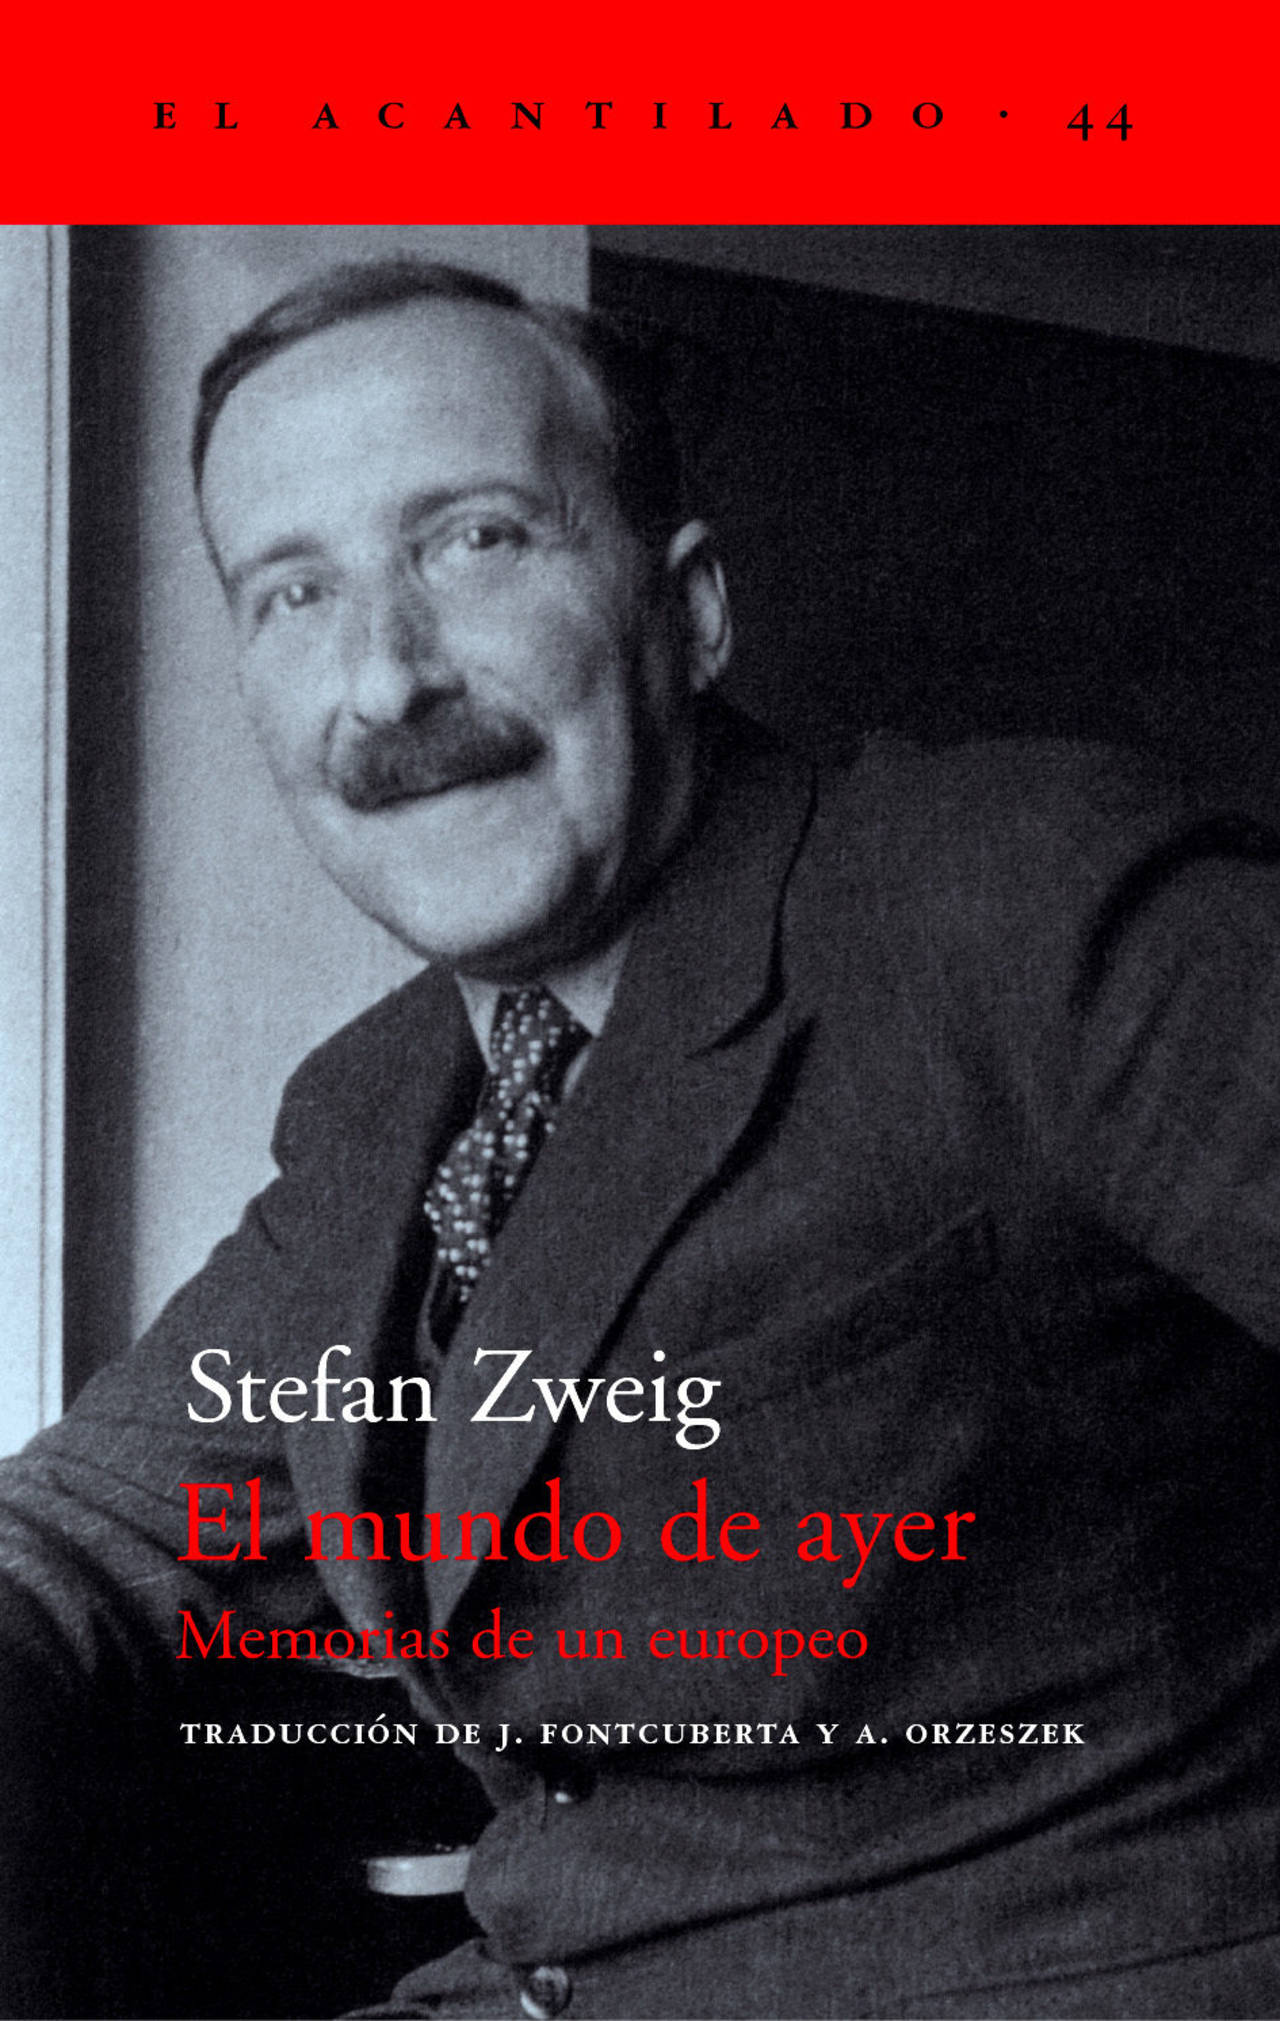 Labor. La obra de Zweig se ha traducido a unos sesenta idiomas. (CORTESÍA)